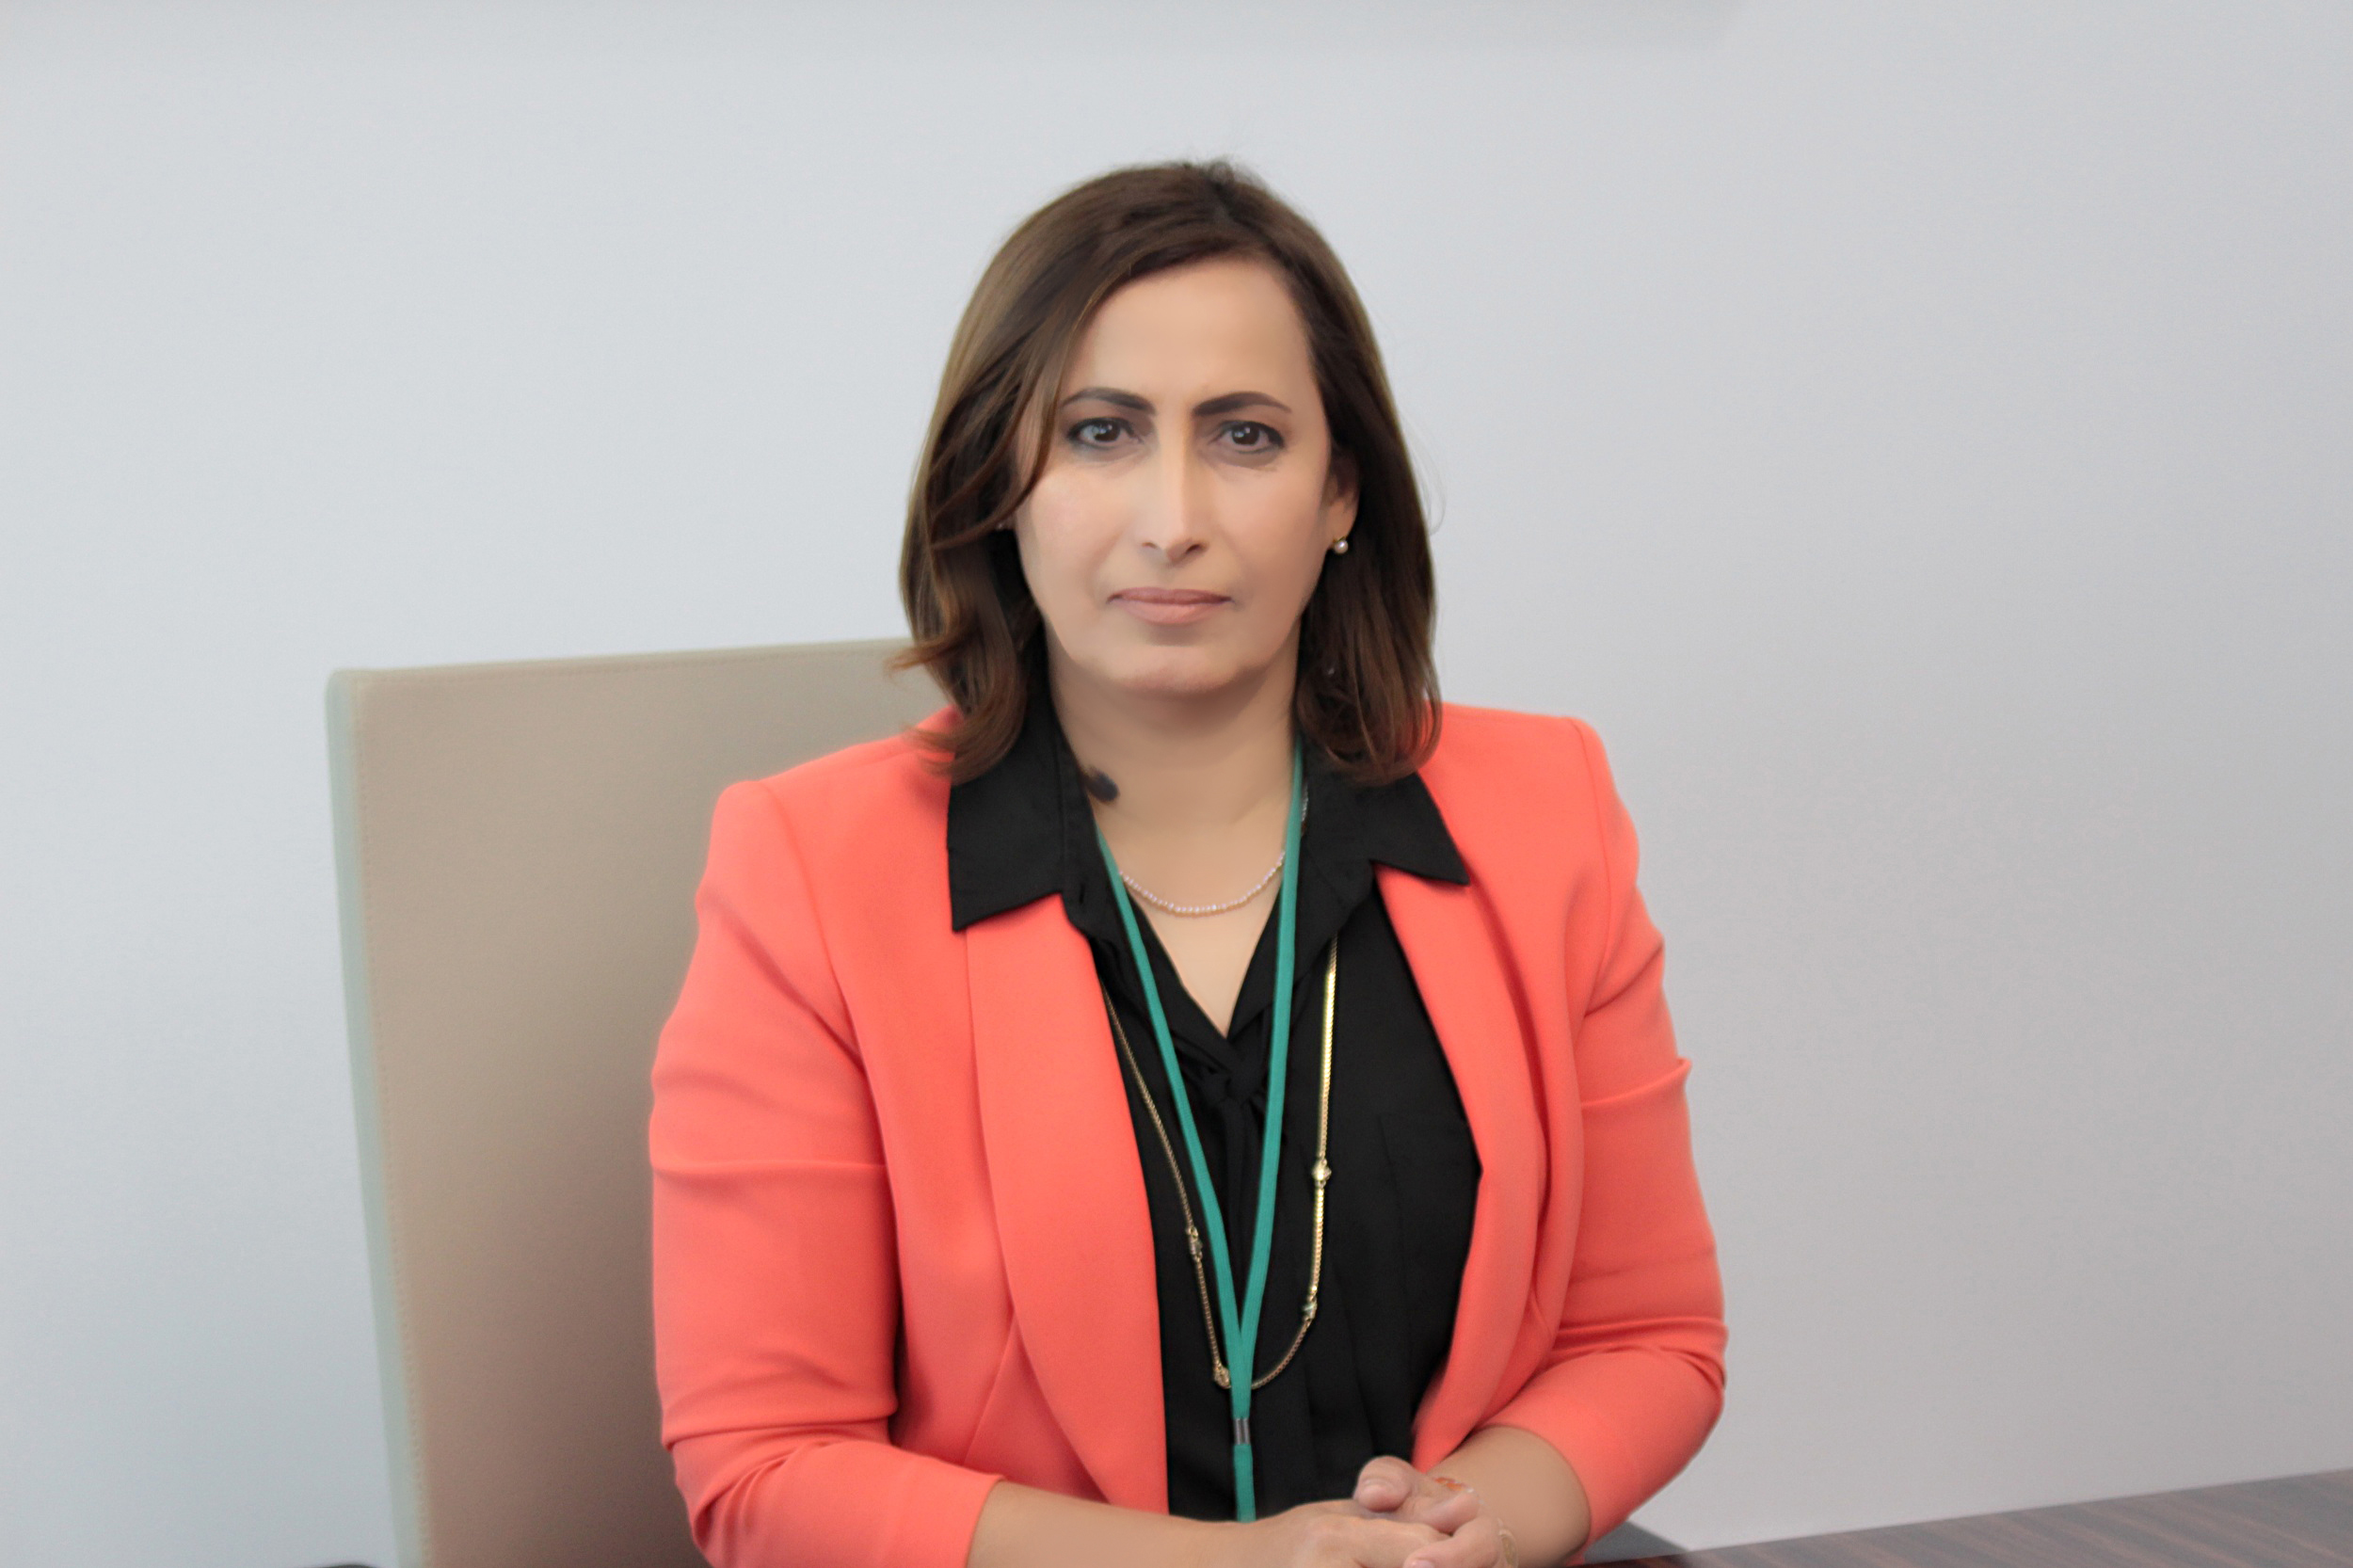 د. مريم الجلاهمة من الشخصيات الأكثر تأثيراً  للعام 2020